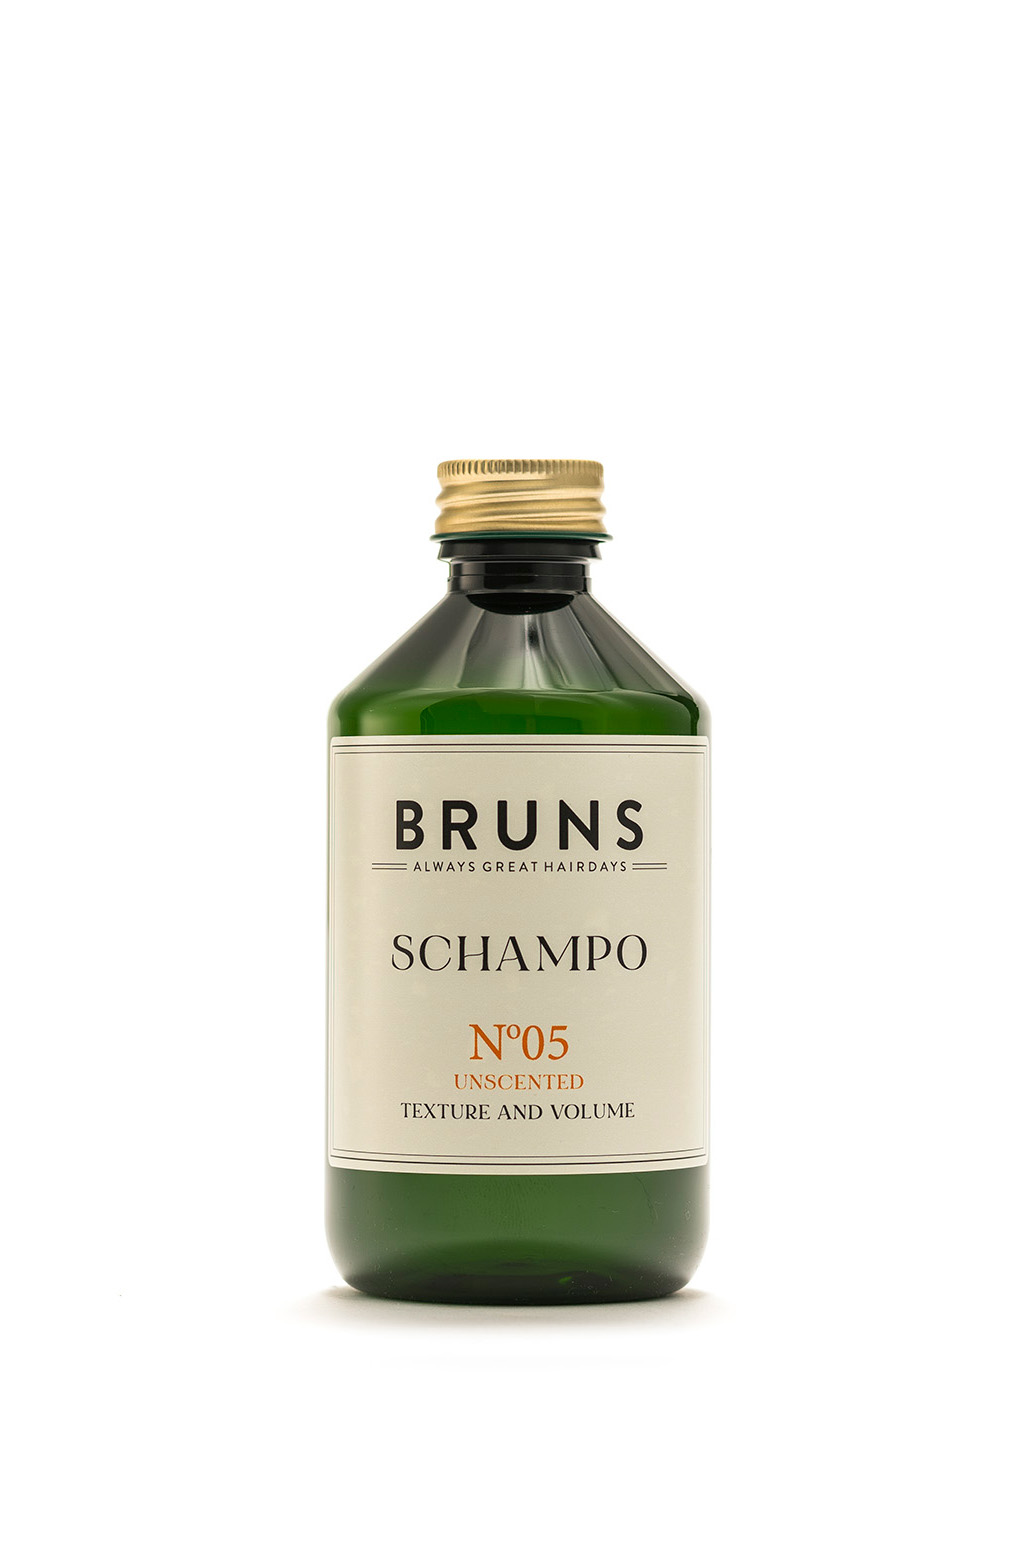 Bruns Products Schampo 05 Oparfymerat Detox 300ml - För allergiker, känslig hårbotten, fet hårbotten &amp; som detox